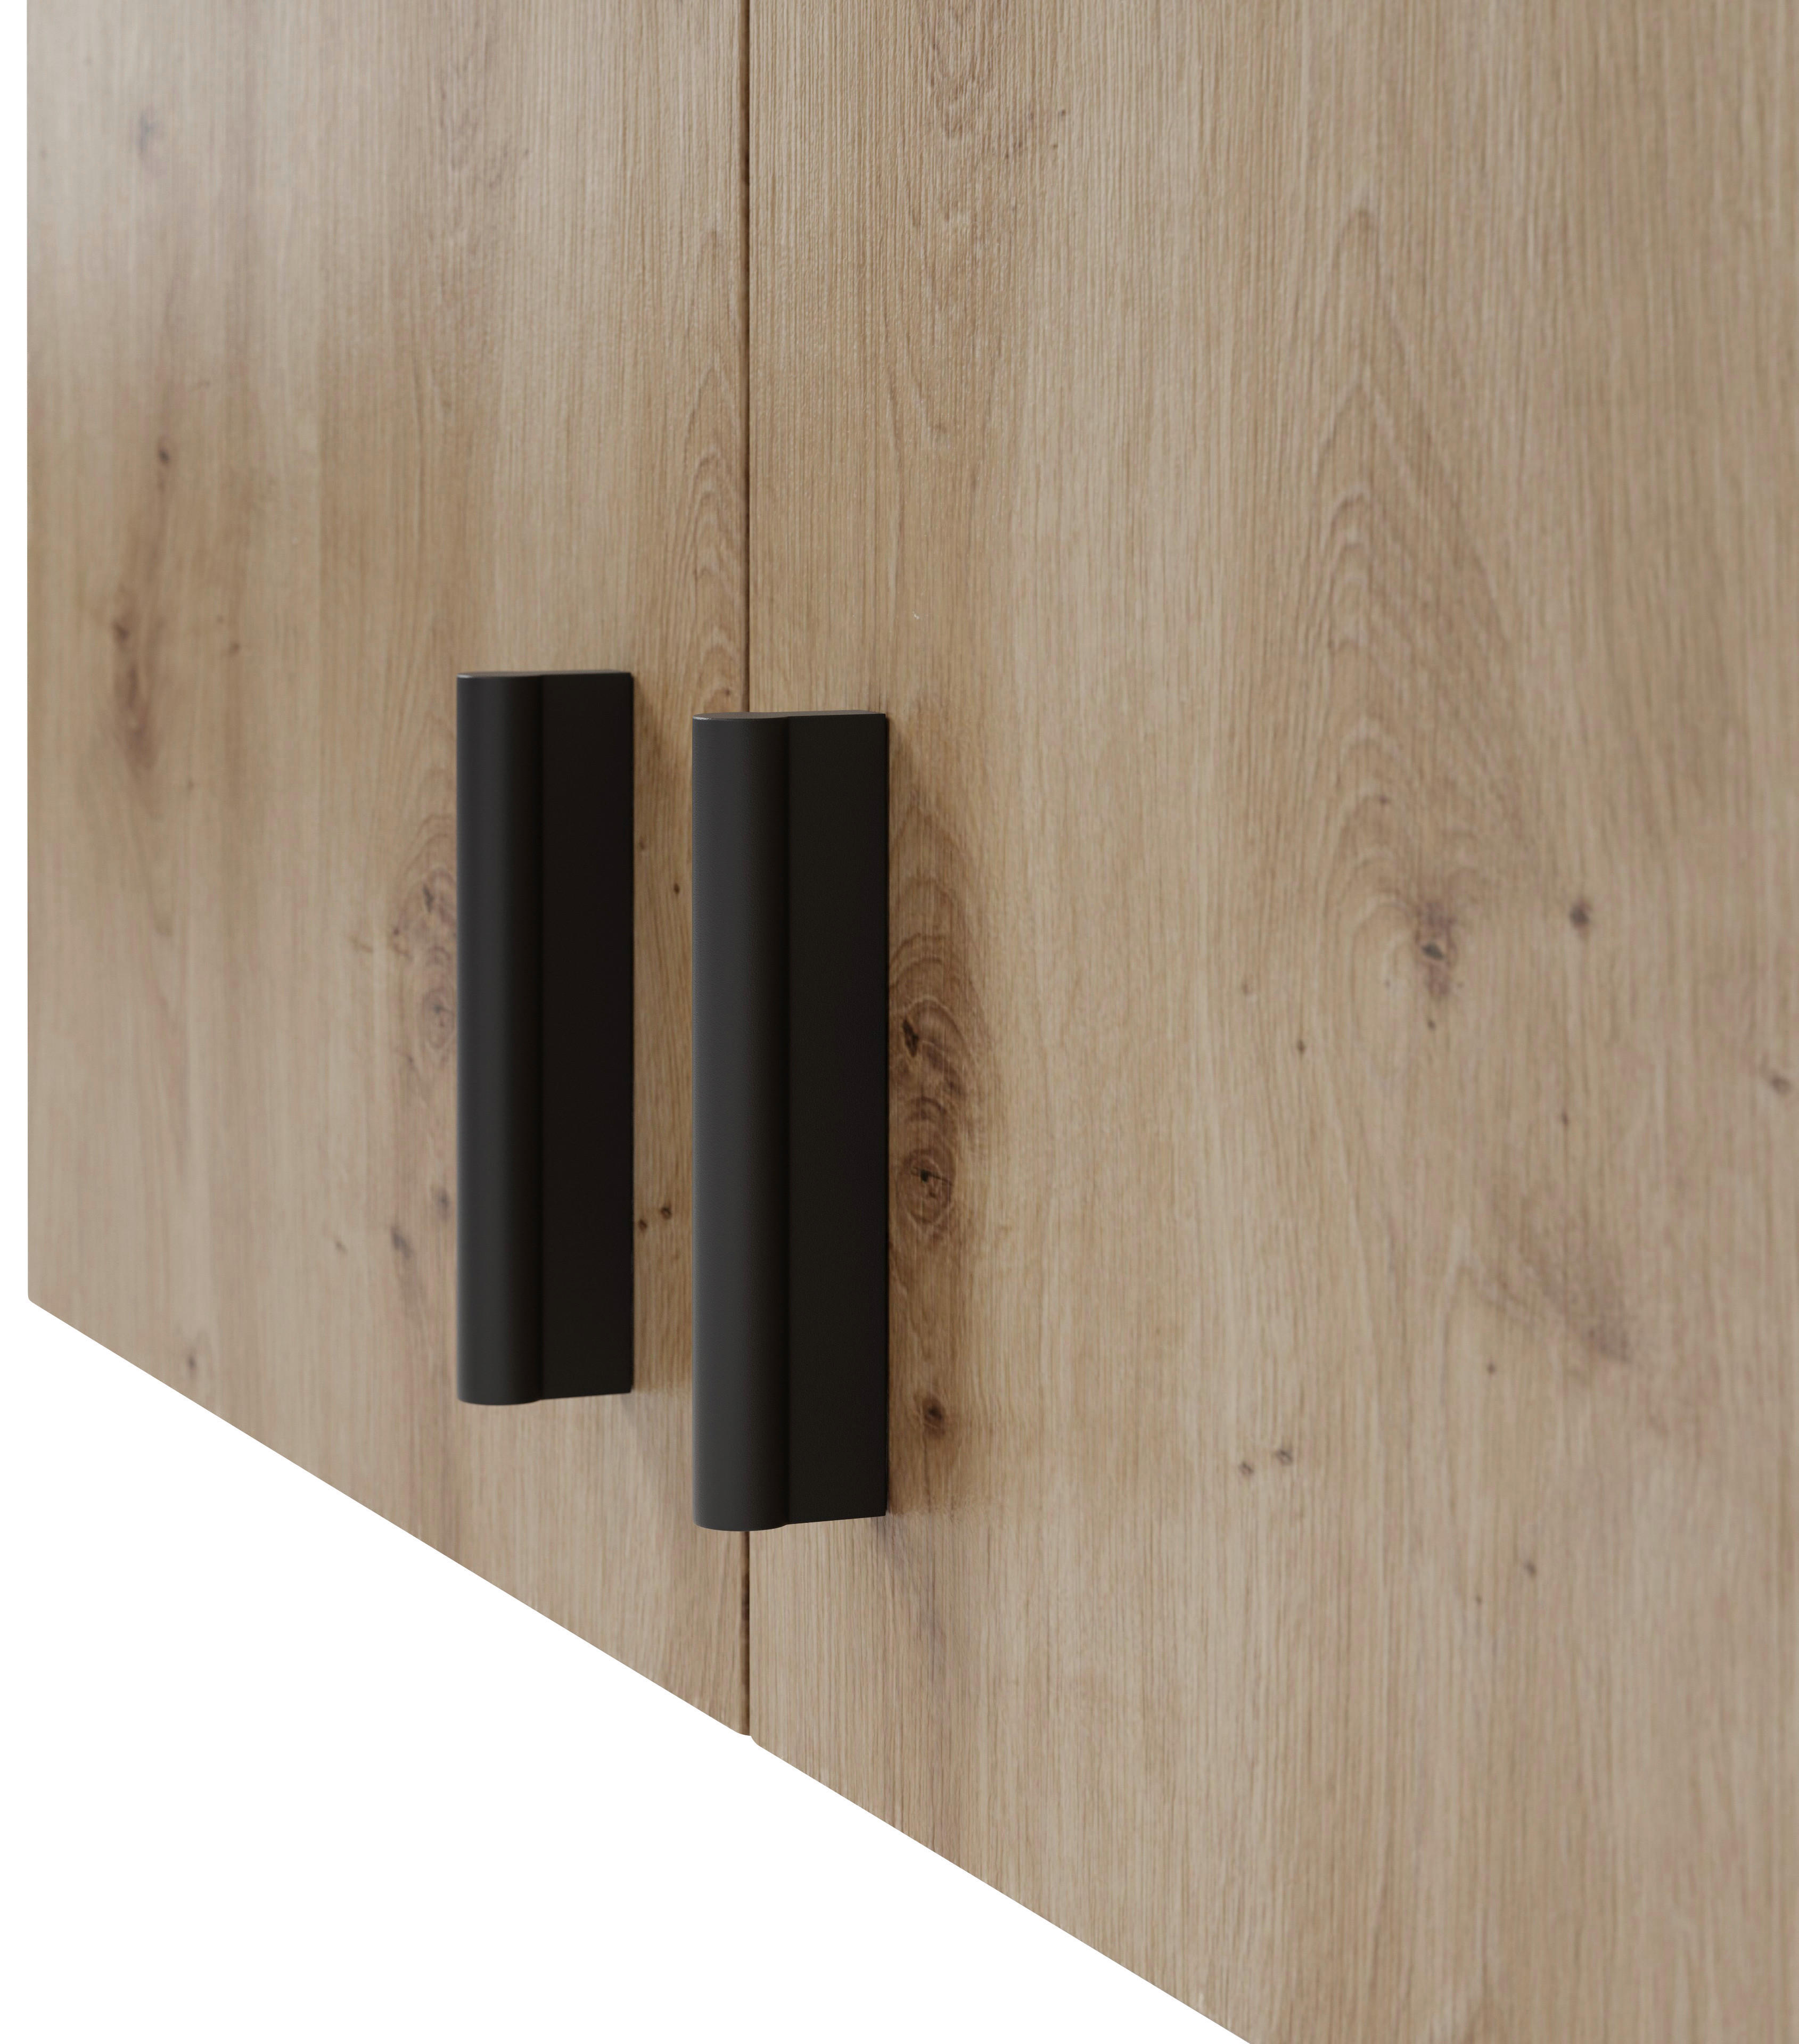 NADSTAVEC NA SKRIŇU, dub artisan, 141,2/50/52,1 cm - čierna/dub artisan, Konventionell, kompozitné drevo/plast (141,2/50/52,1cm) - Boxxx